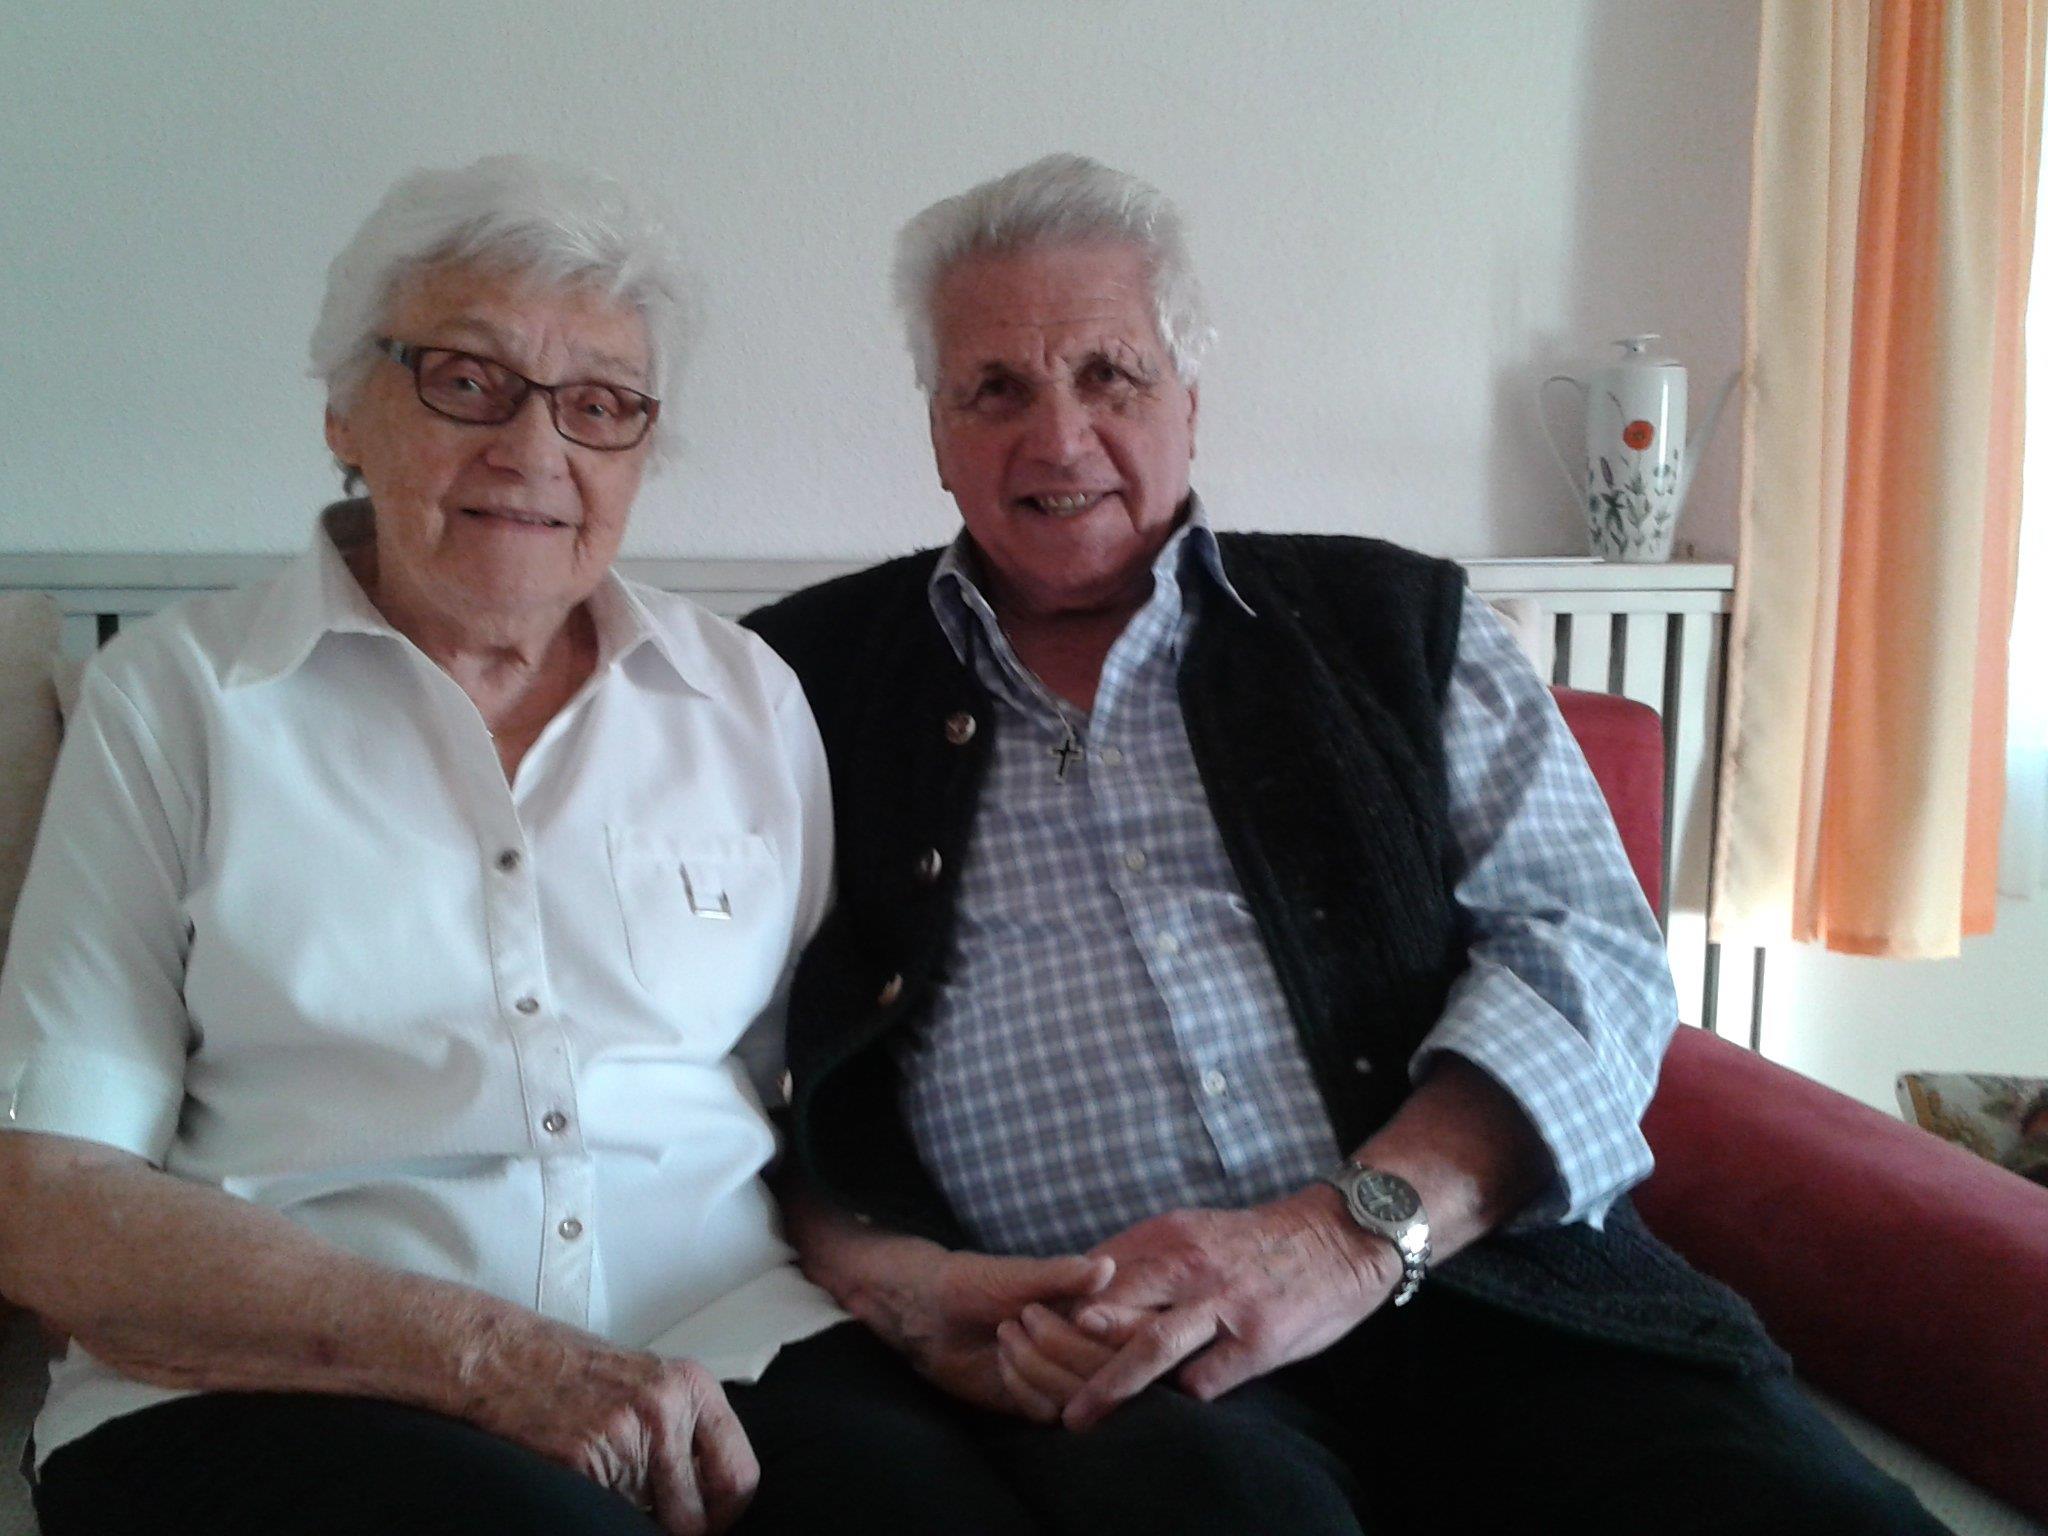 Noch viele schöne gemeinsame Jahre wünschen sich Annemarie und Max Lampert zum 60. Hochzeitstag.